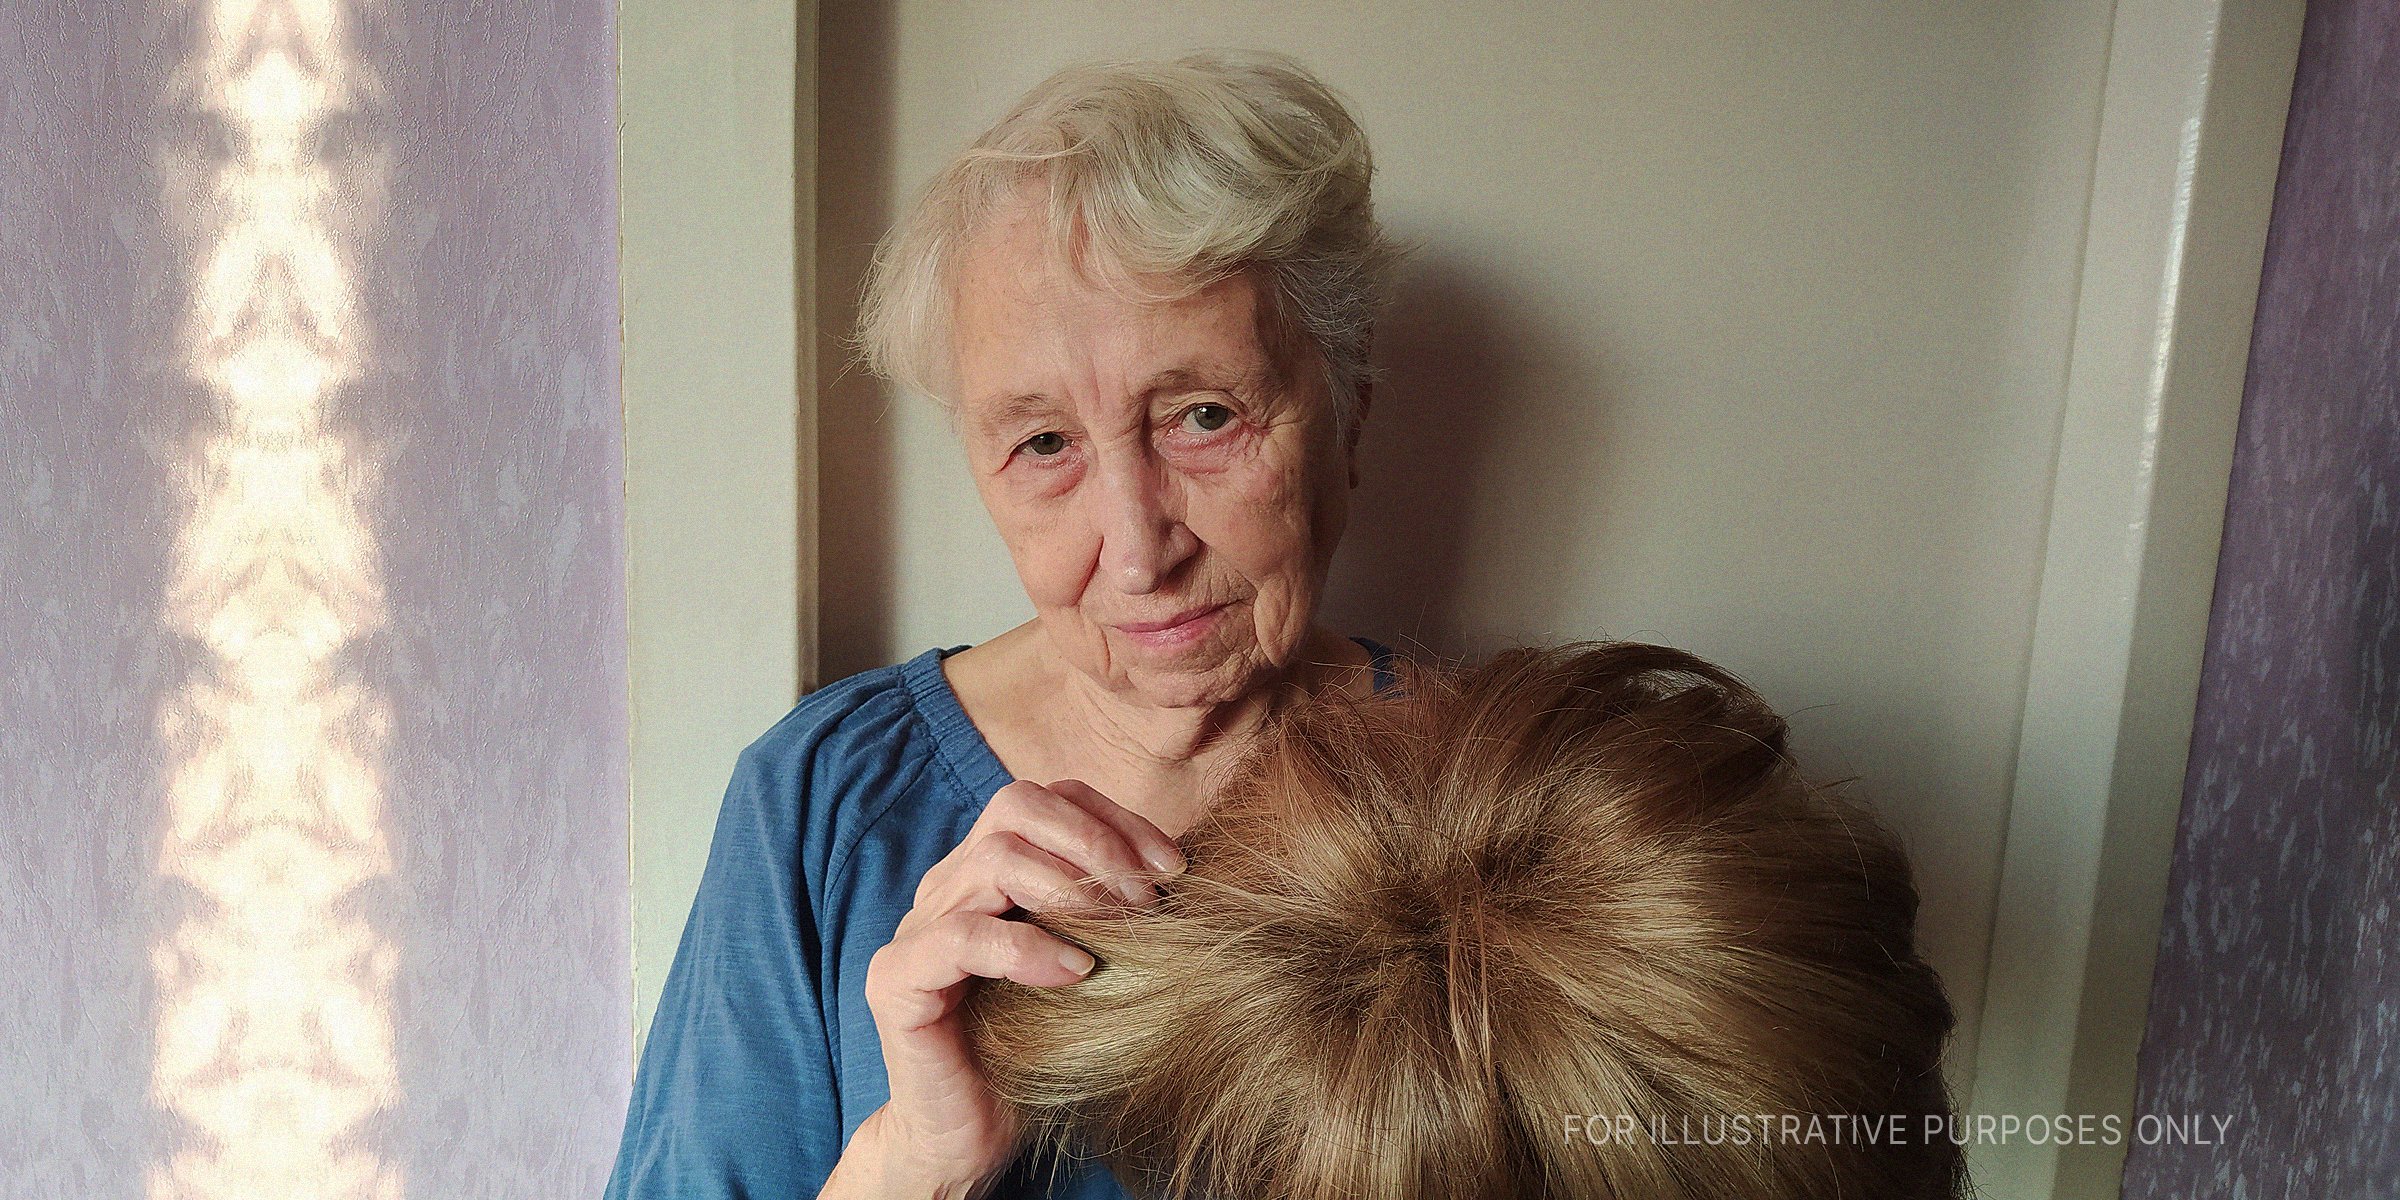 Alte Frau zeigt ihre Perücke. | Quelle: Shutterstock